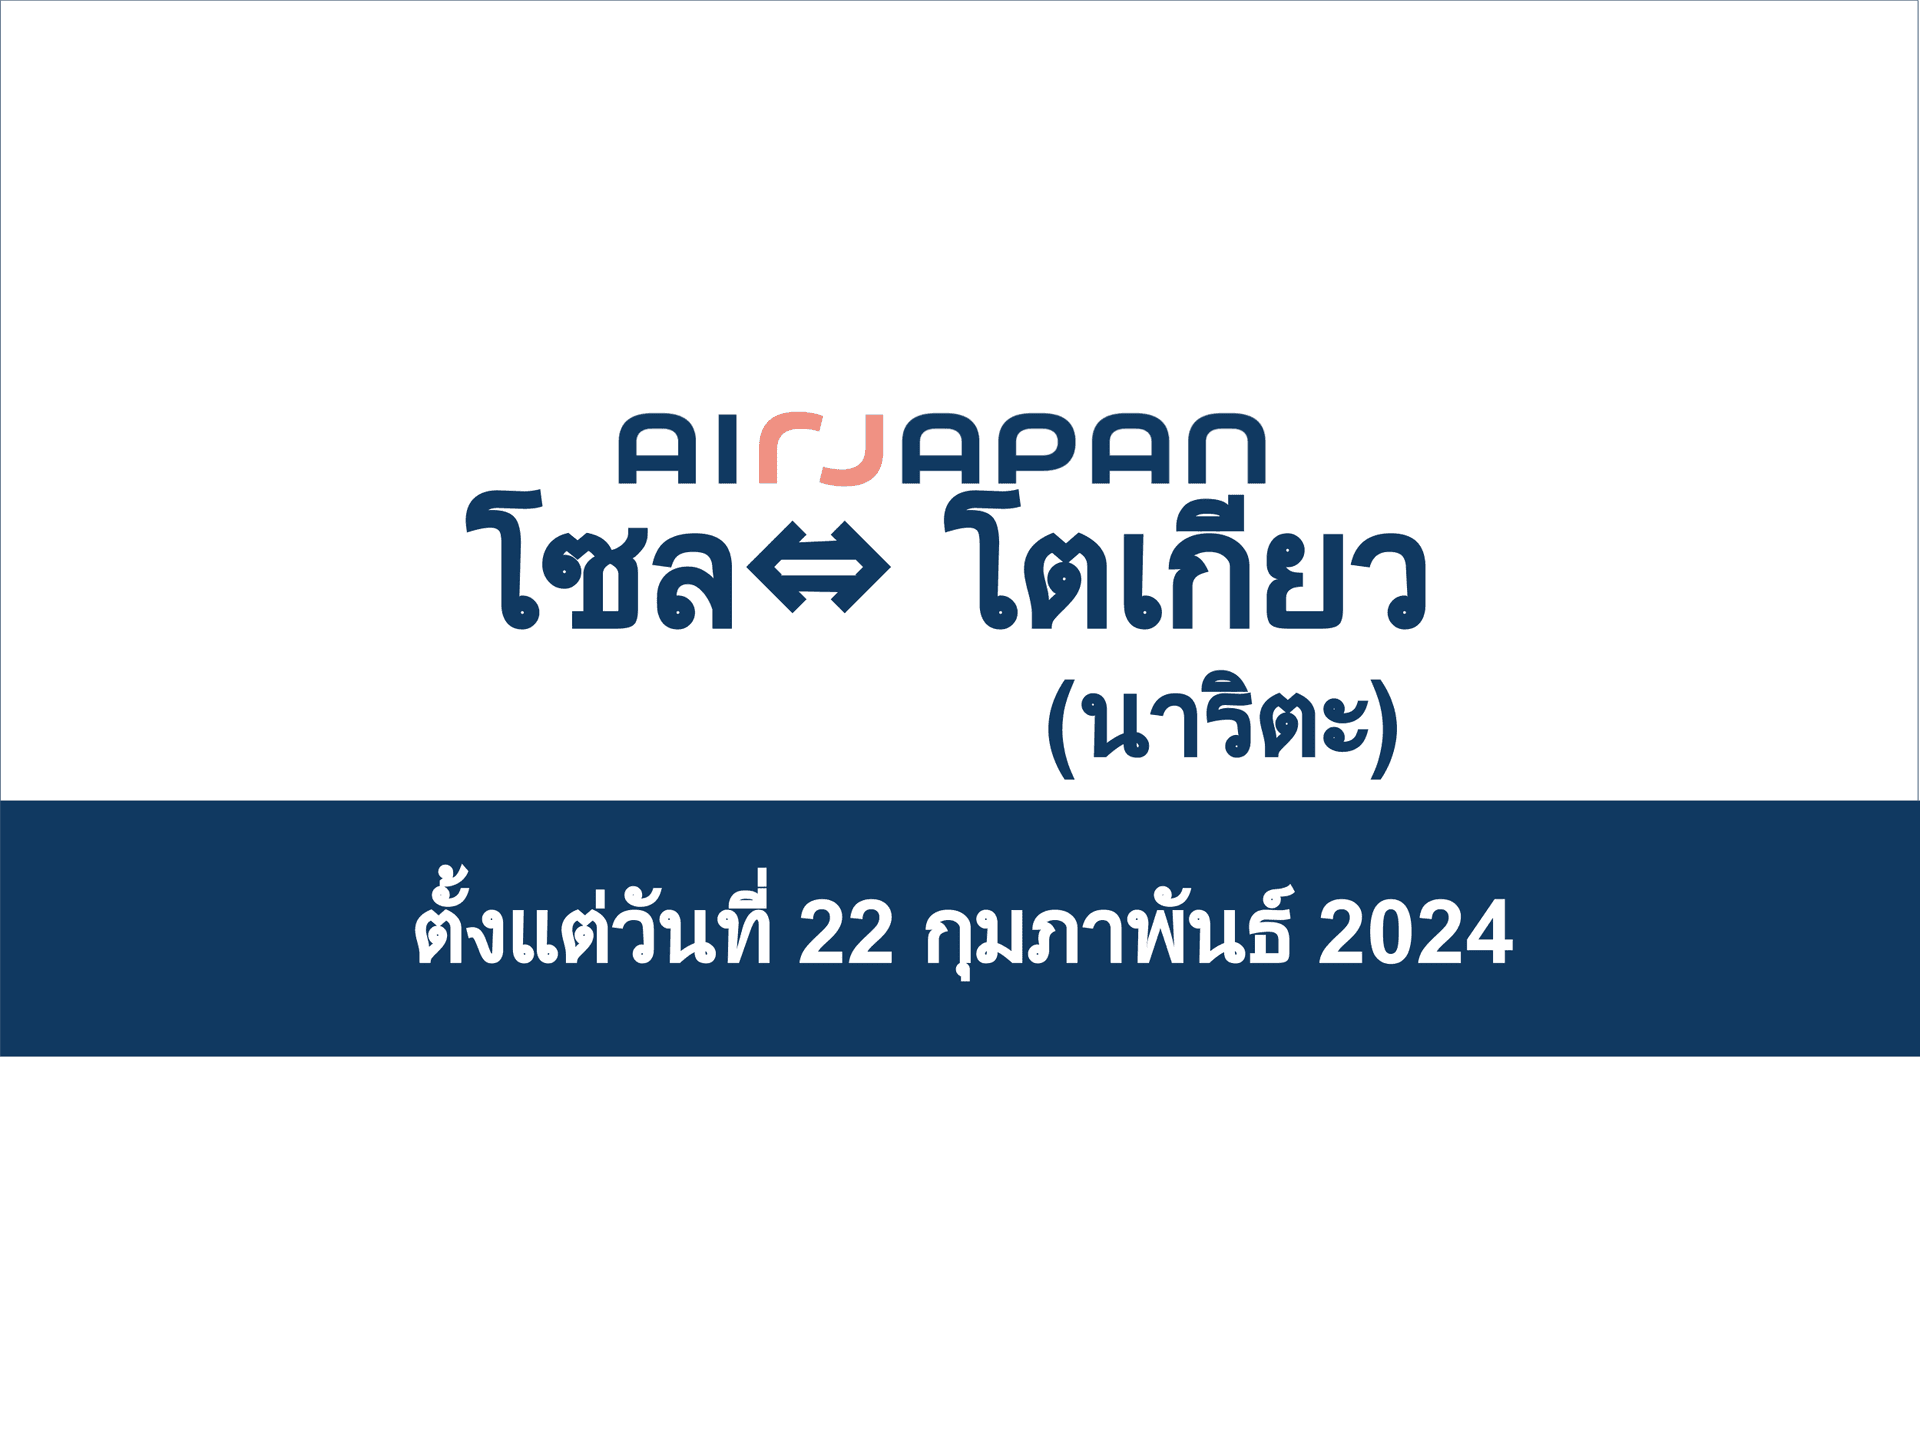 เส้นทาง NRT-ICN จะเริ่มในวันพฤหัสบดีที่ 22 กุมภาพันธ์ 2024